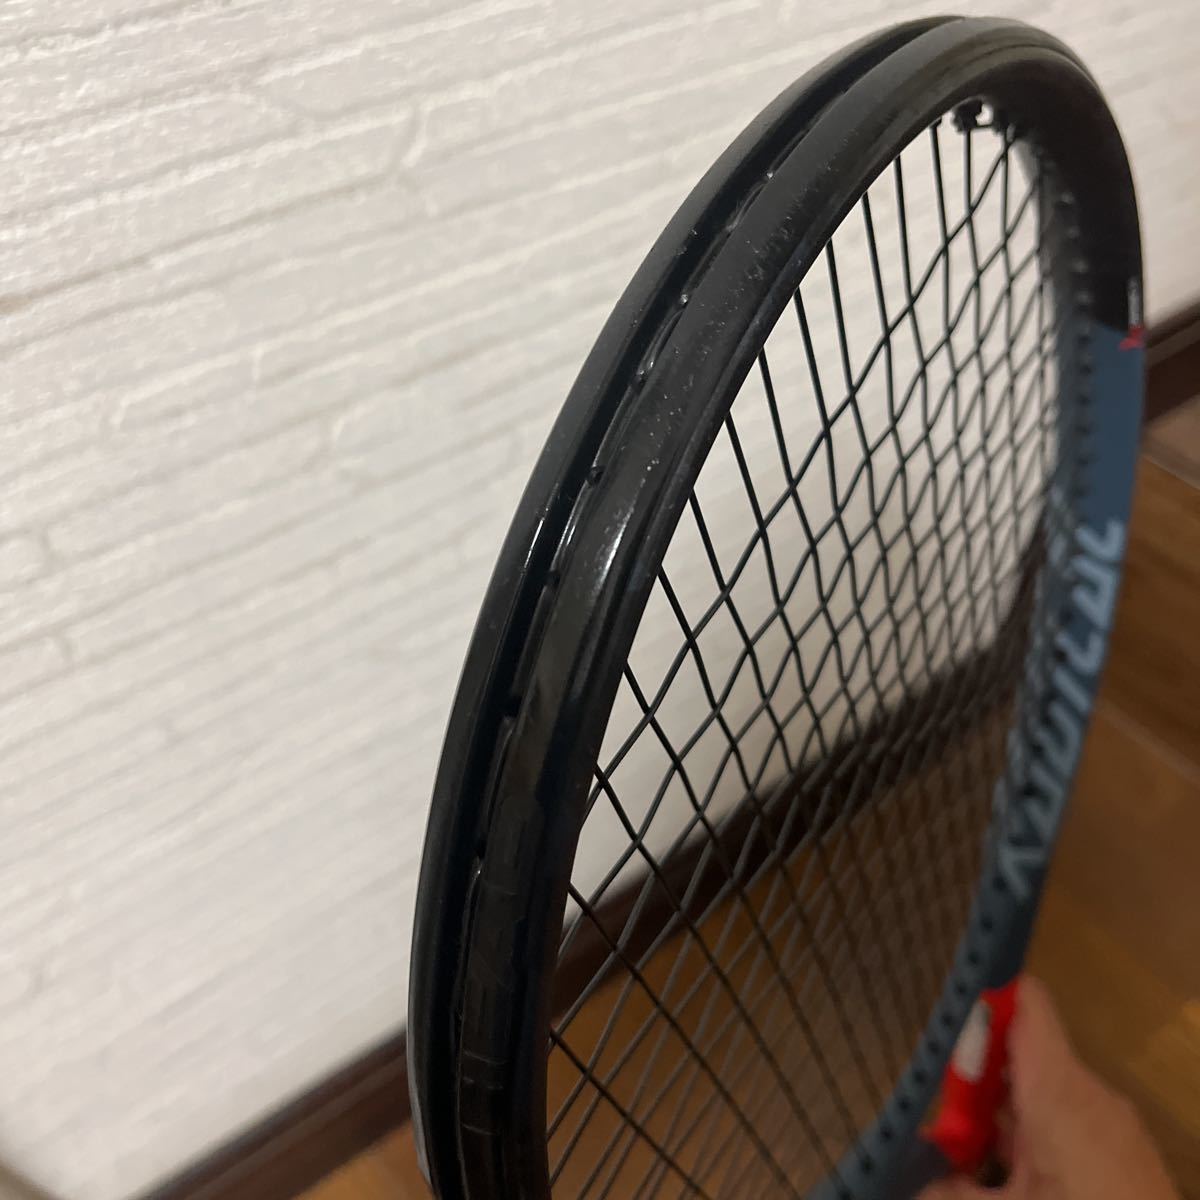 テニスラケット ヘッド グラフィン 360 ラジカル MP 2019年モデル (G2